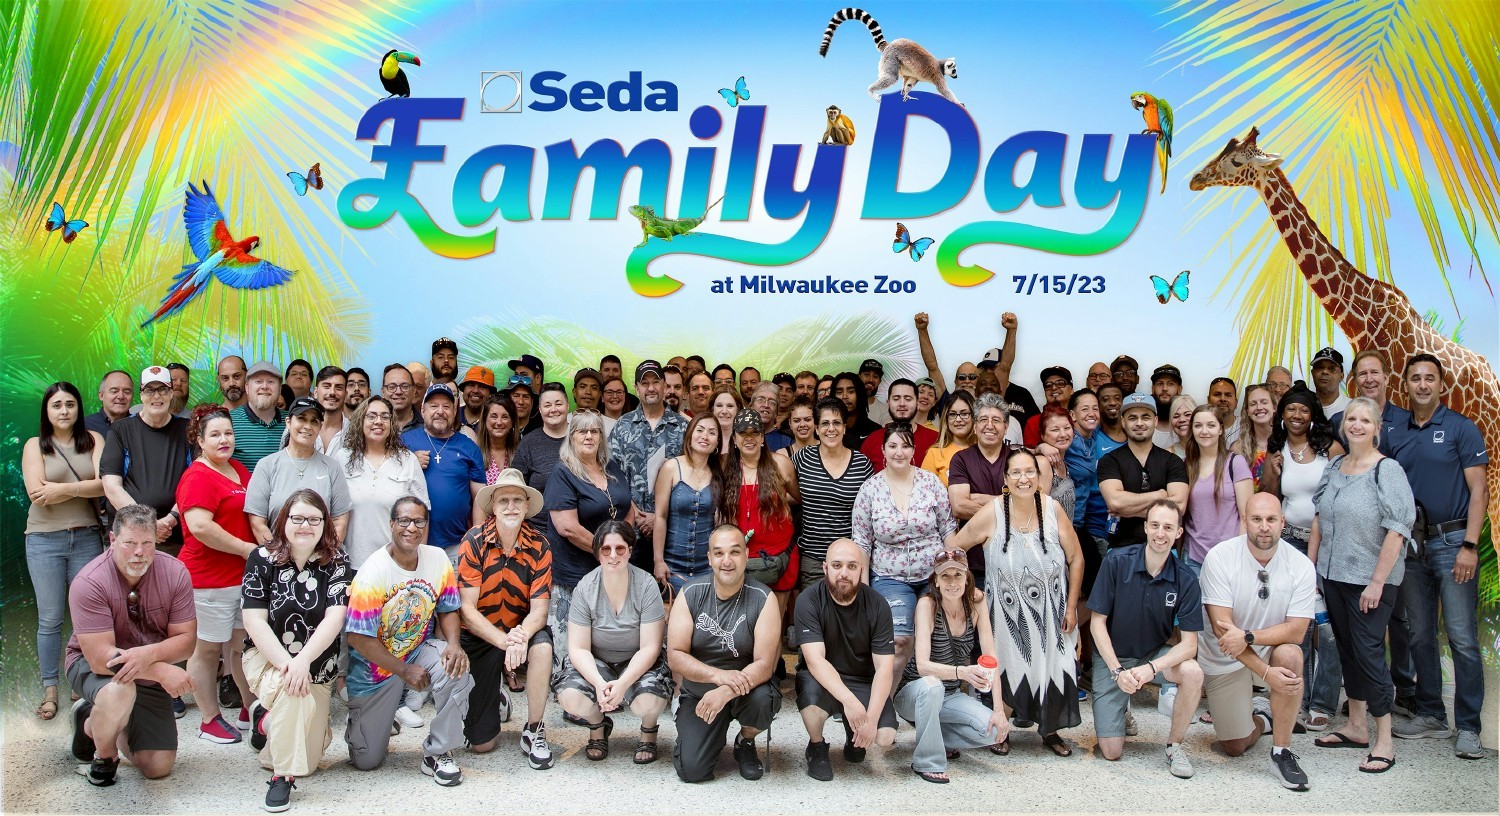 Seda Family Day